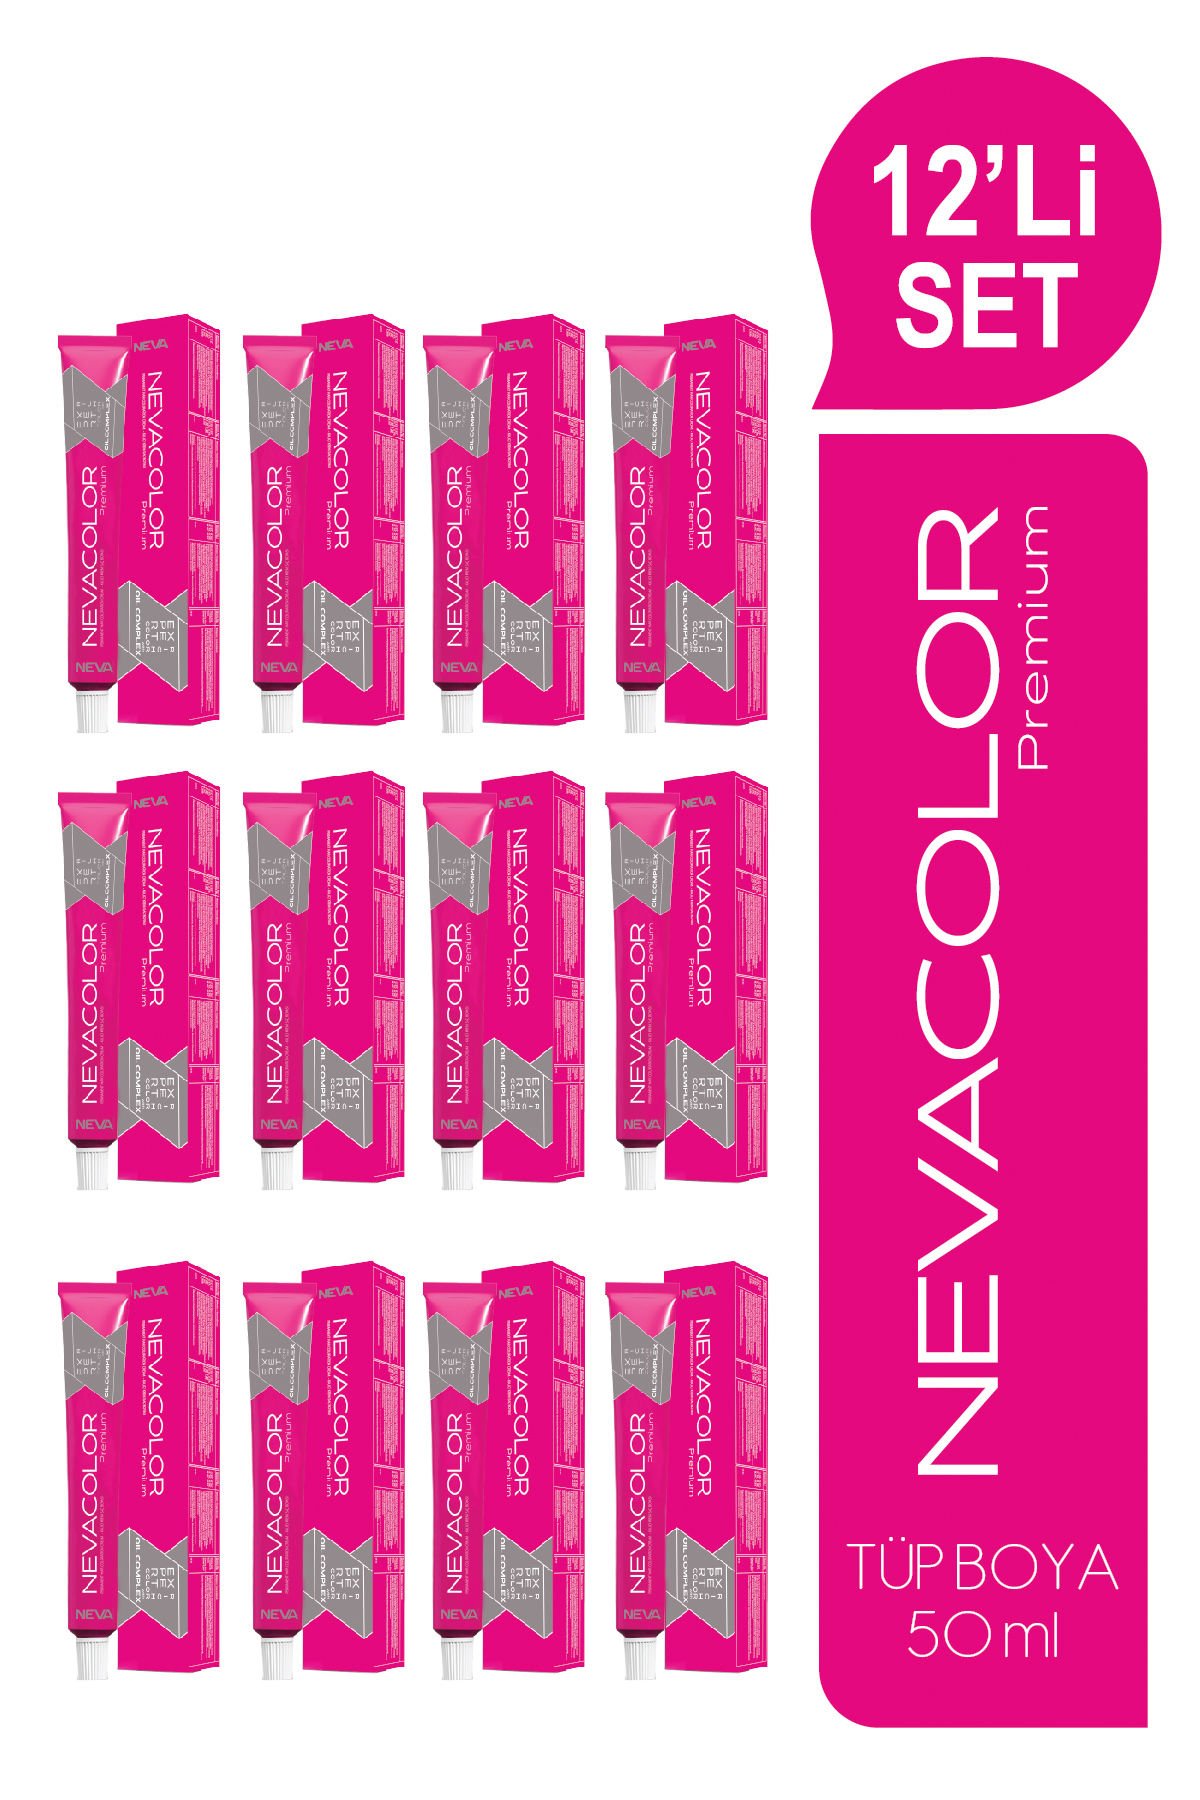 NEVACOLOR Premium 12'Lİ SET  6.11 EKTRA KÜLLÜ KOYU KUMRAL Kalıcı Krem Saç Boyası (50ml x 12 adet)